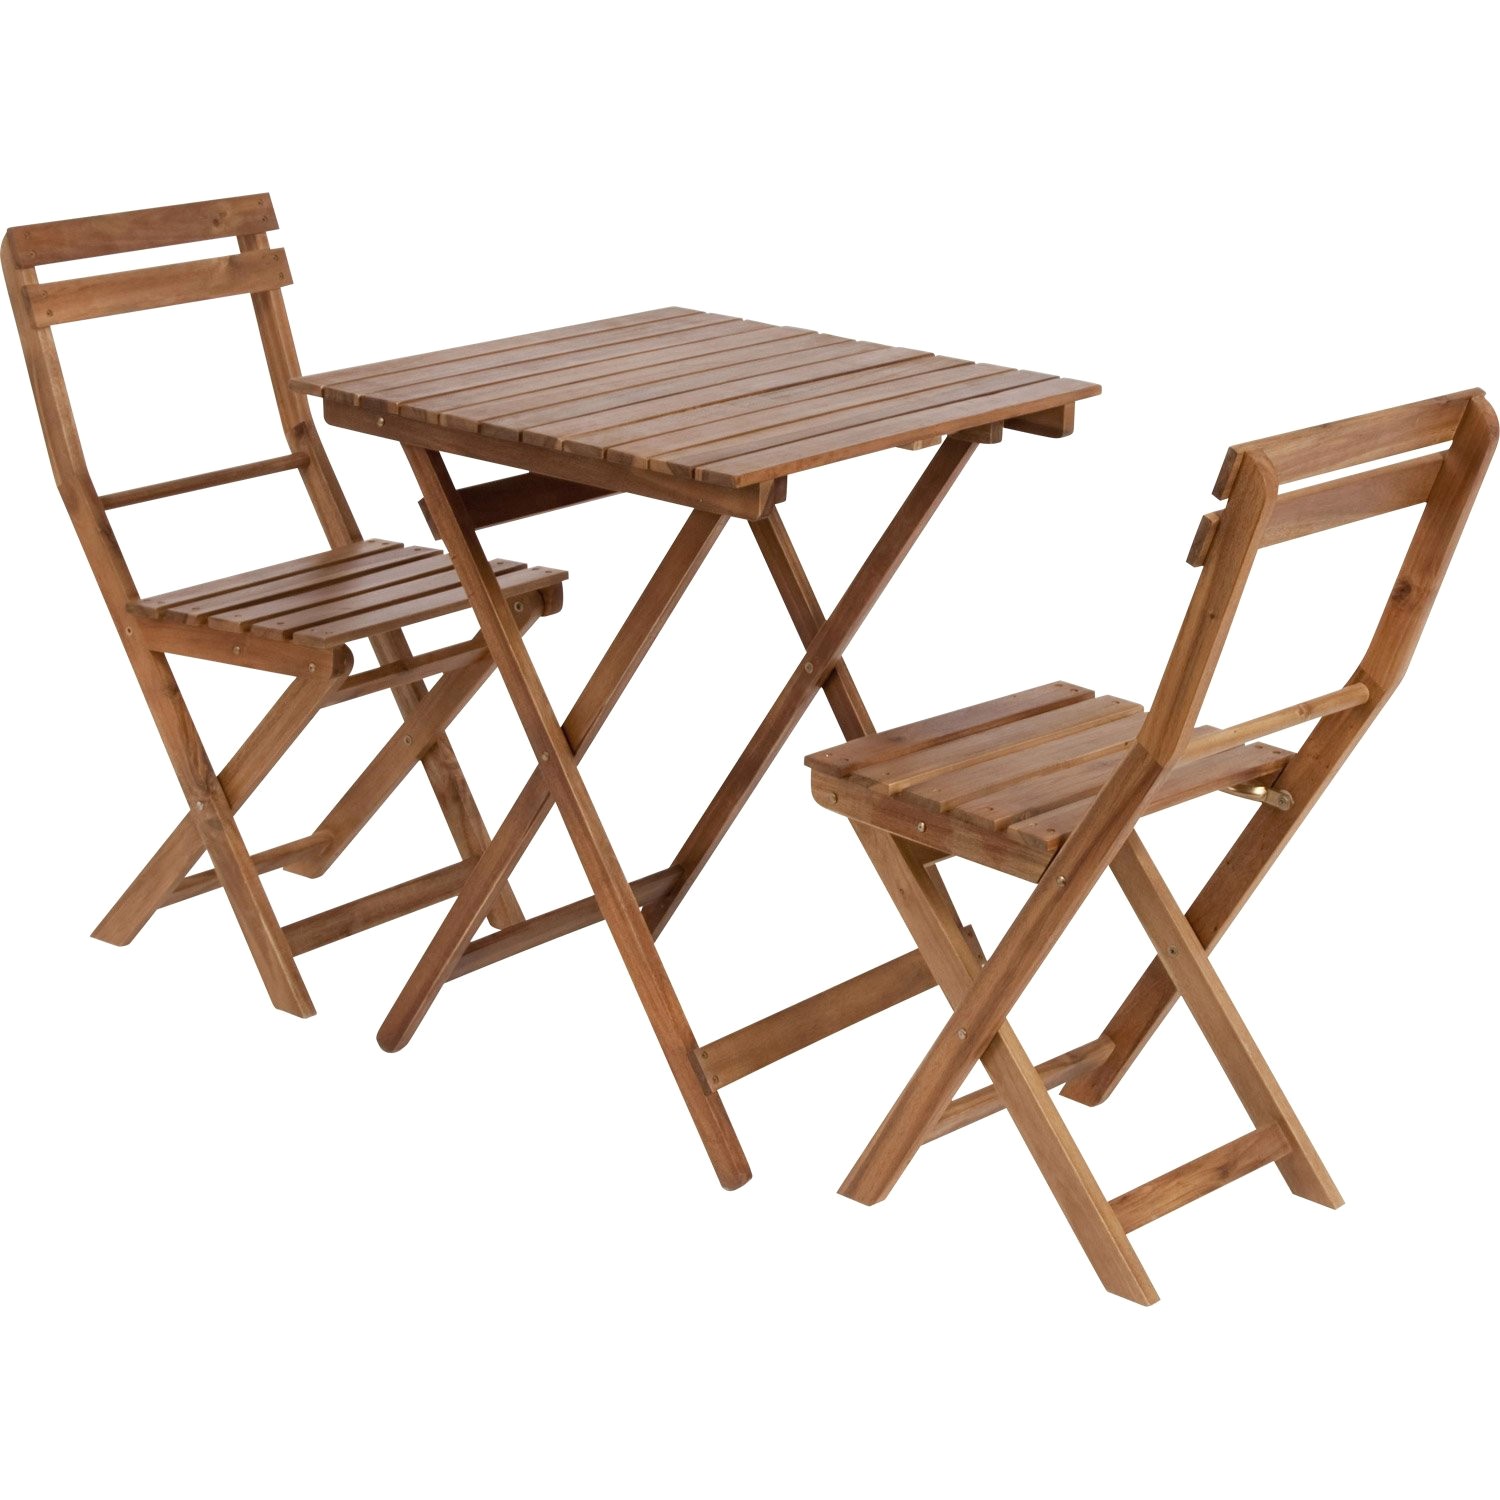 chaises exterieur ikea avec table et chaise de jardin beau bois acacia idees jsscene des id c3 83 es of like fauteuil